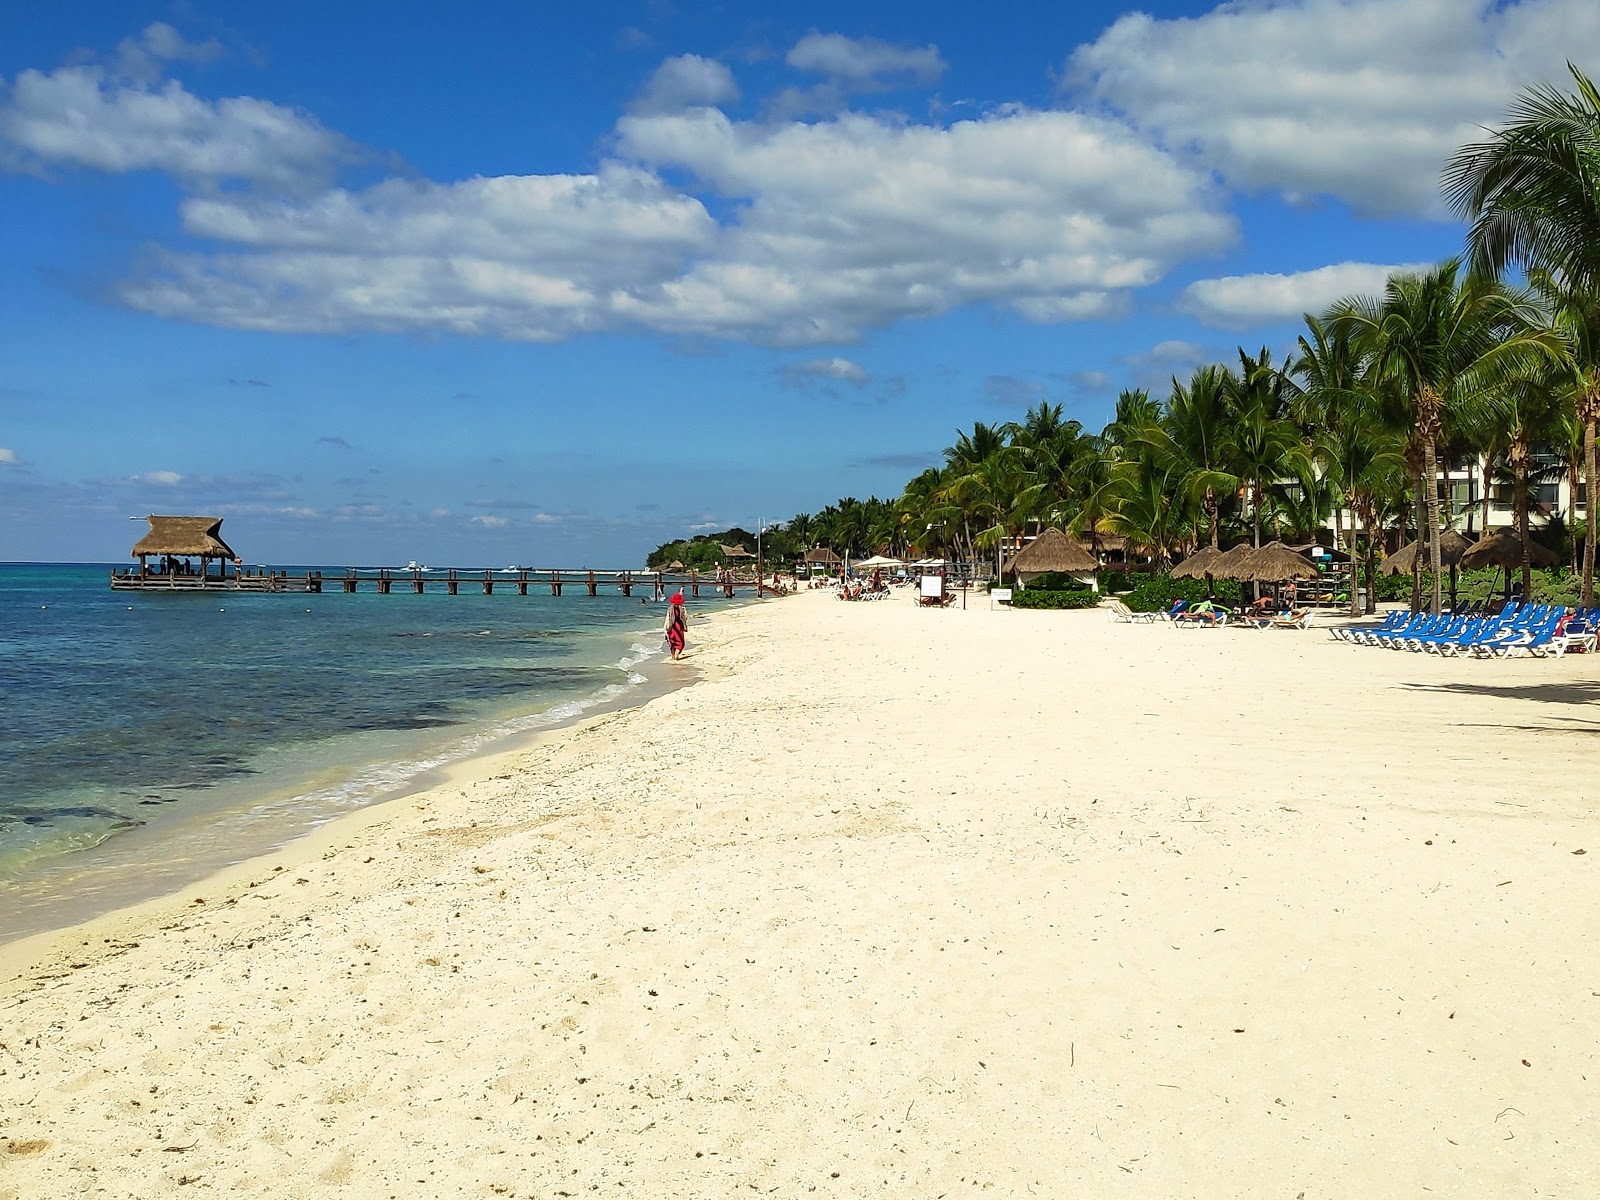 Foto di Playa Mia con una superficie del sabbia fine e luminosa